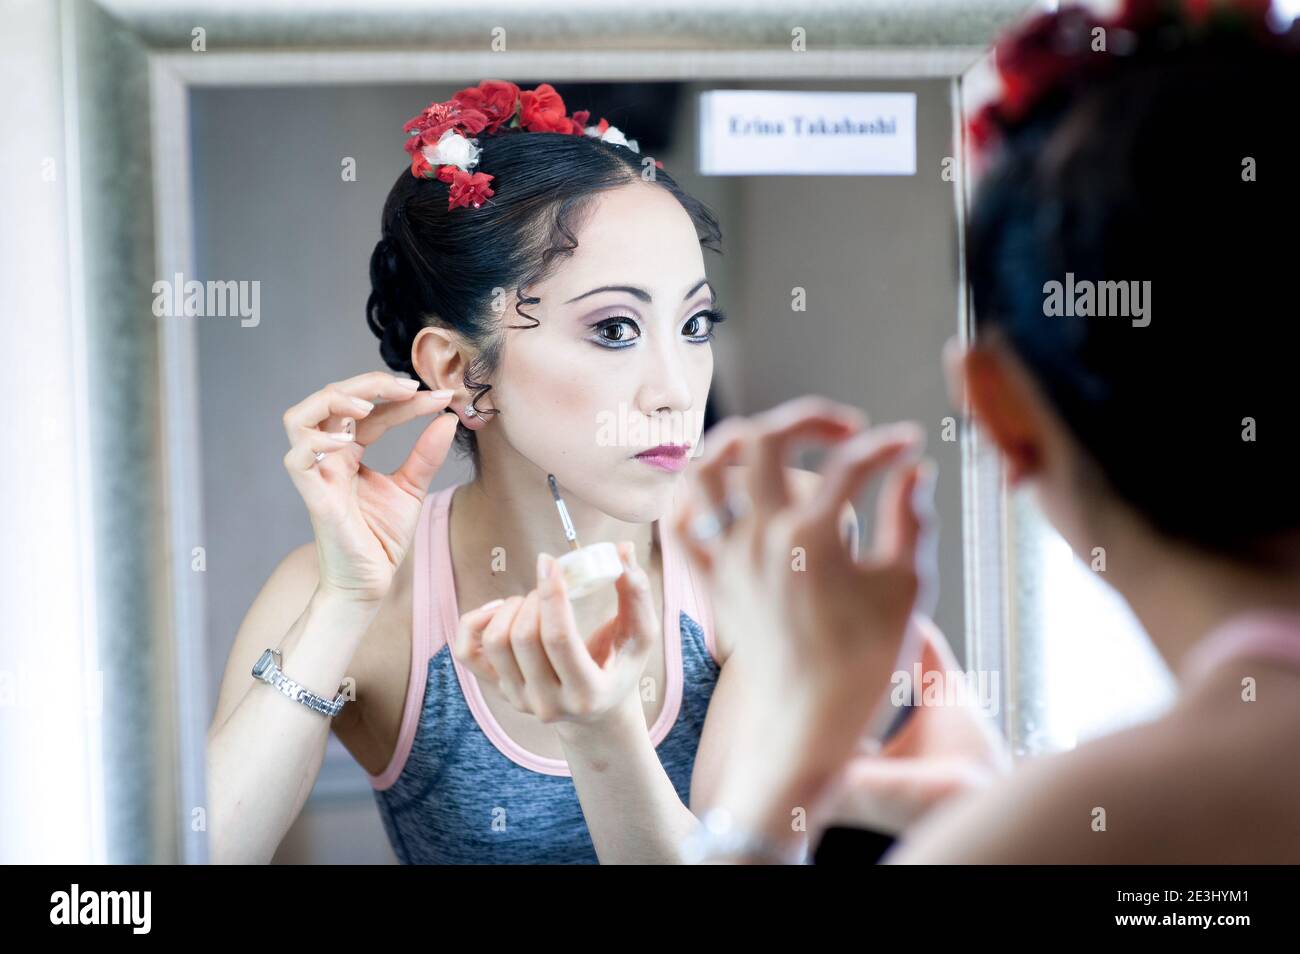 Bailarina Erina Takahashi hace su maquillaje en el espejo del vestidor antes de una actuación Foto de stock